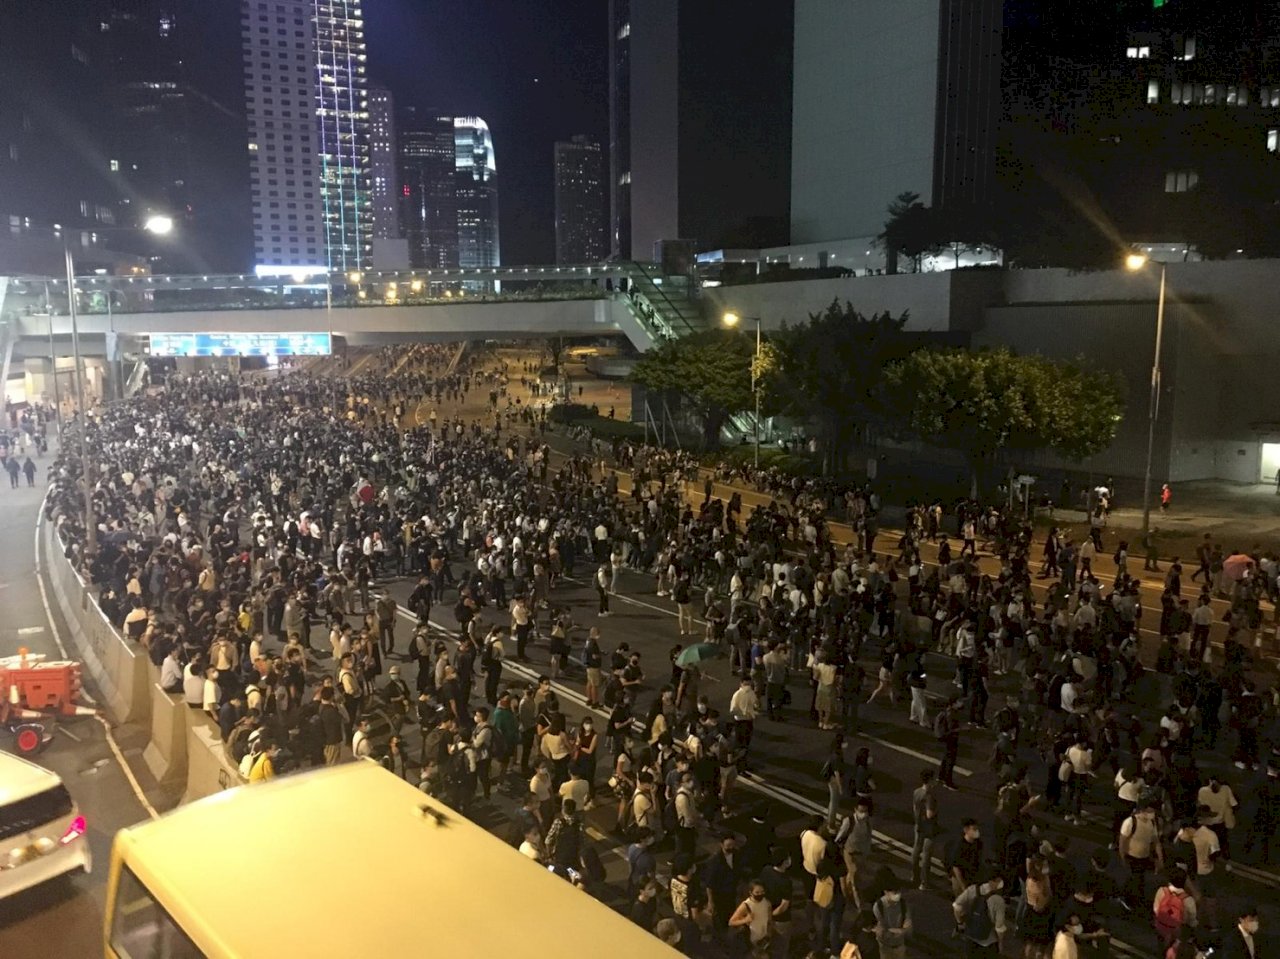 香港前線抗爭者稱會繼續蒙面抗議 有市民憂訂更嚴苛法例